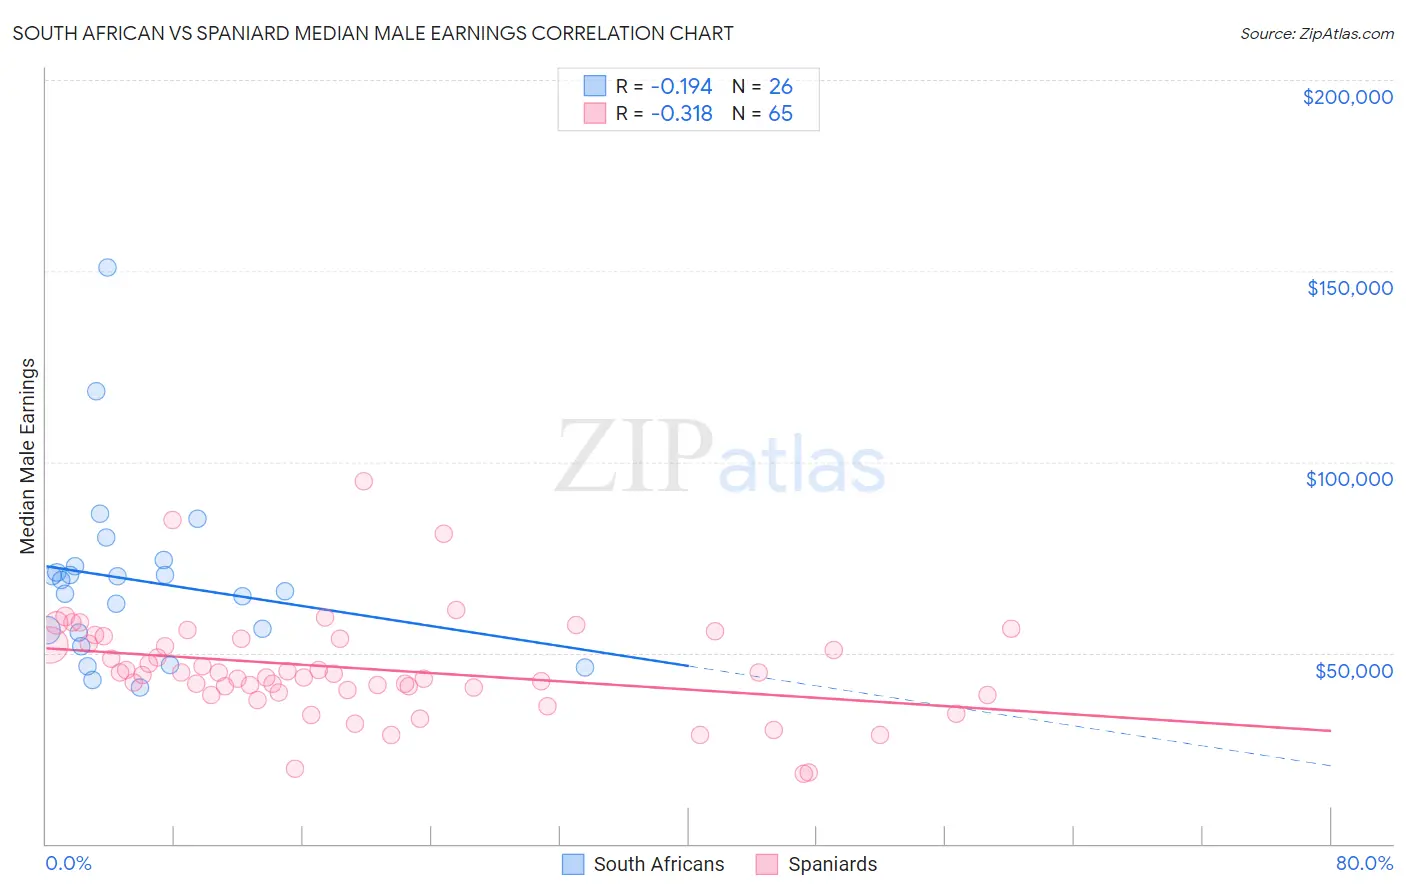 South African vs Spaniard Median Male Earnings